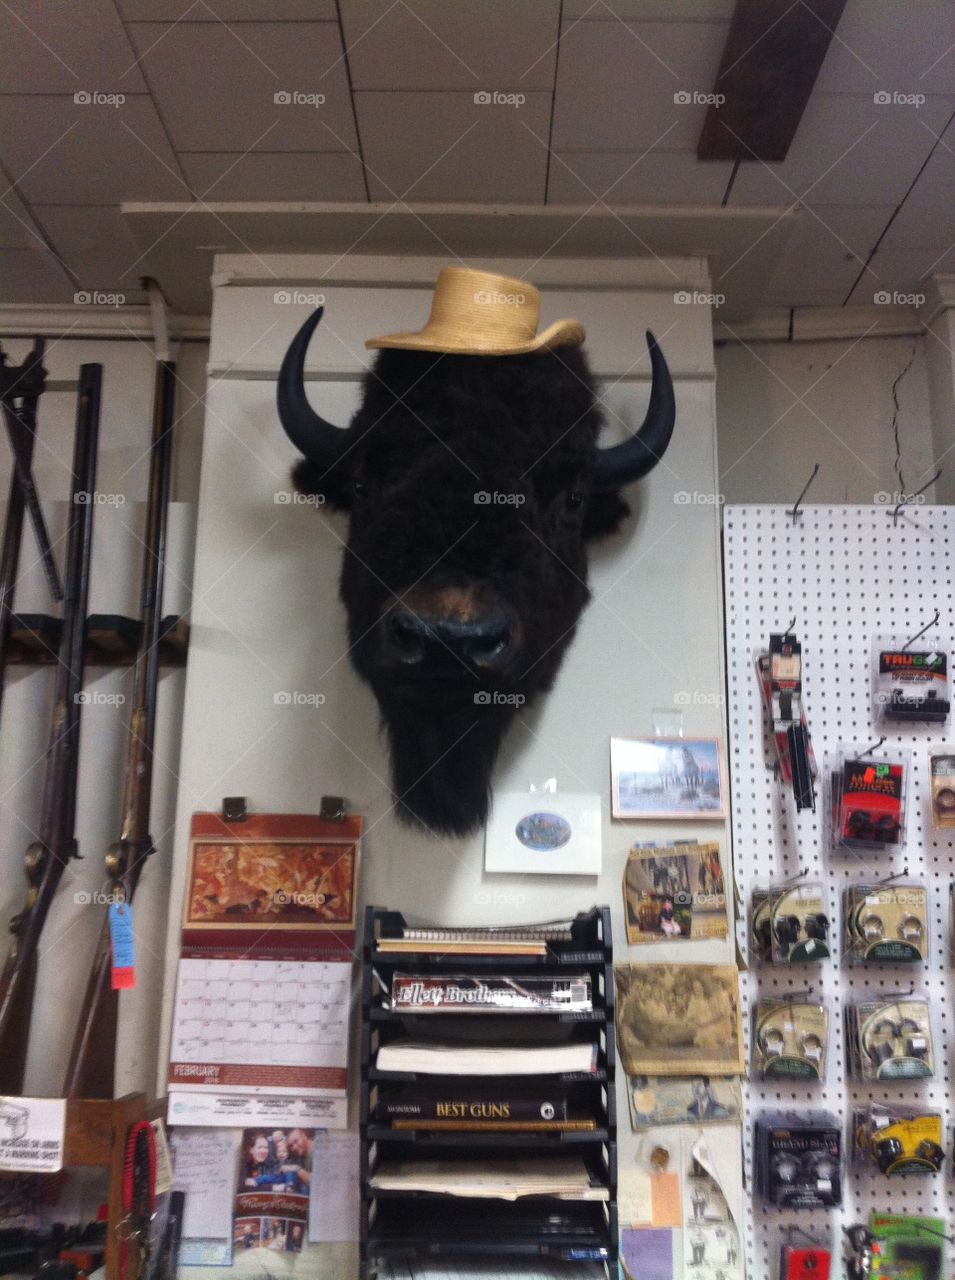 Buffalo Head Trading Post